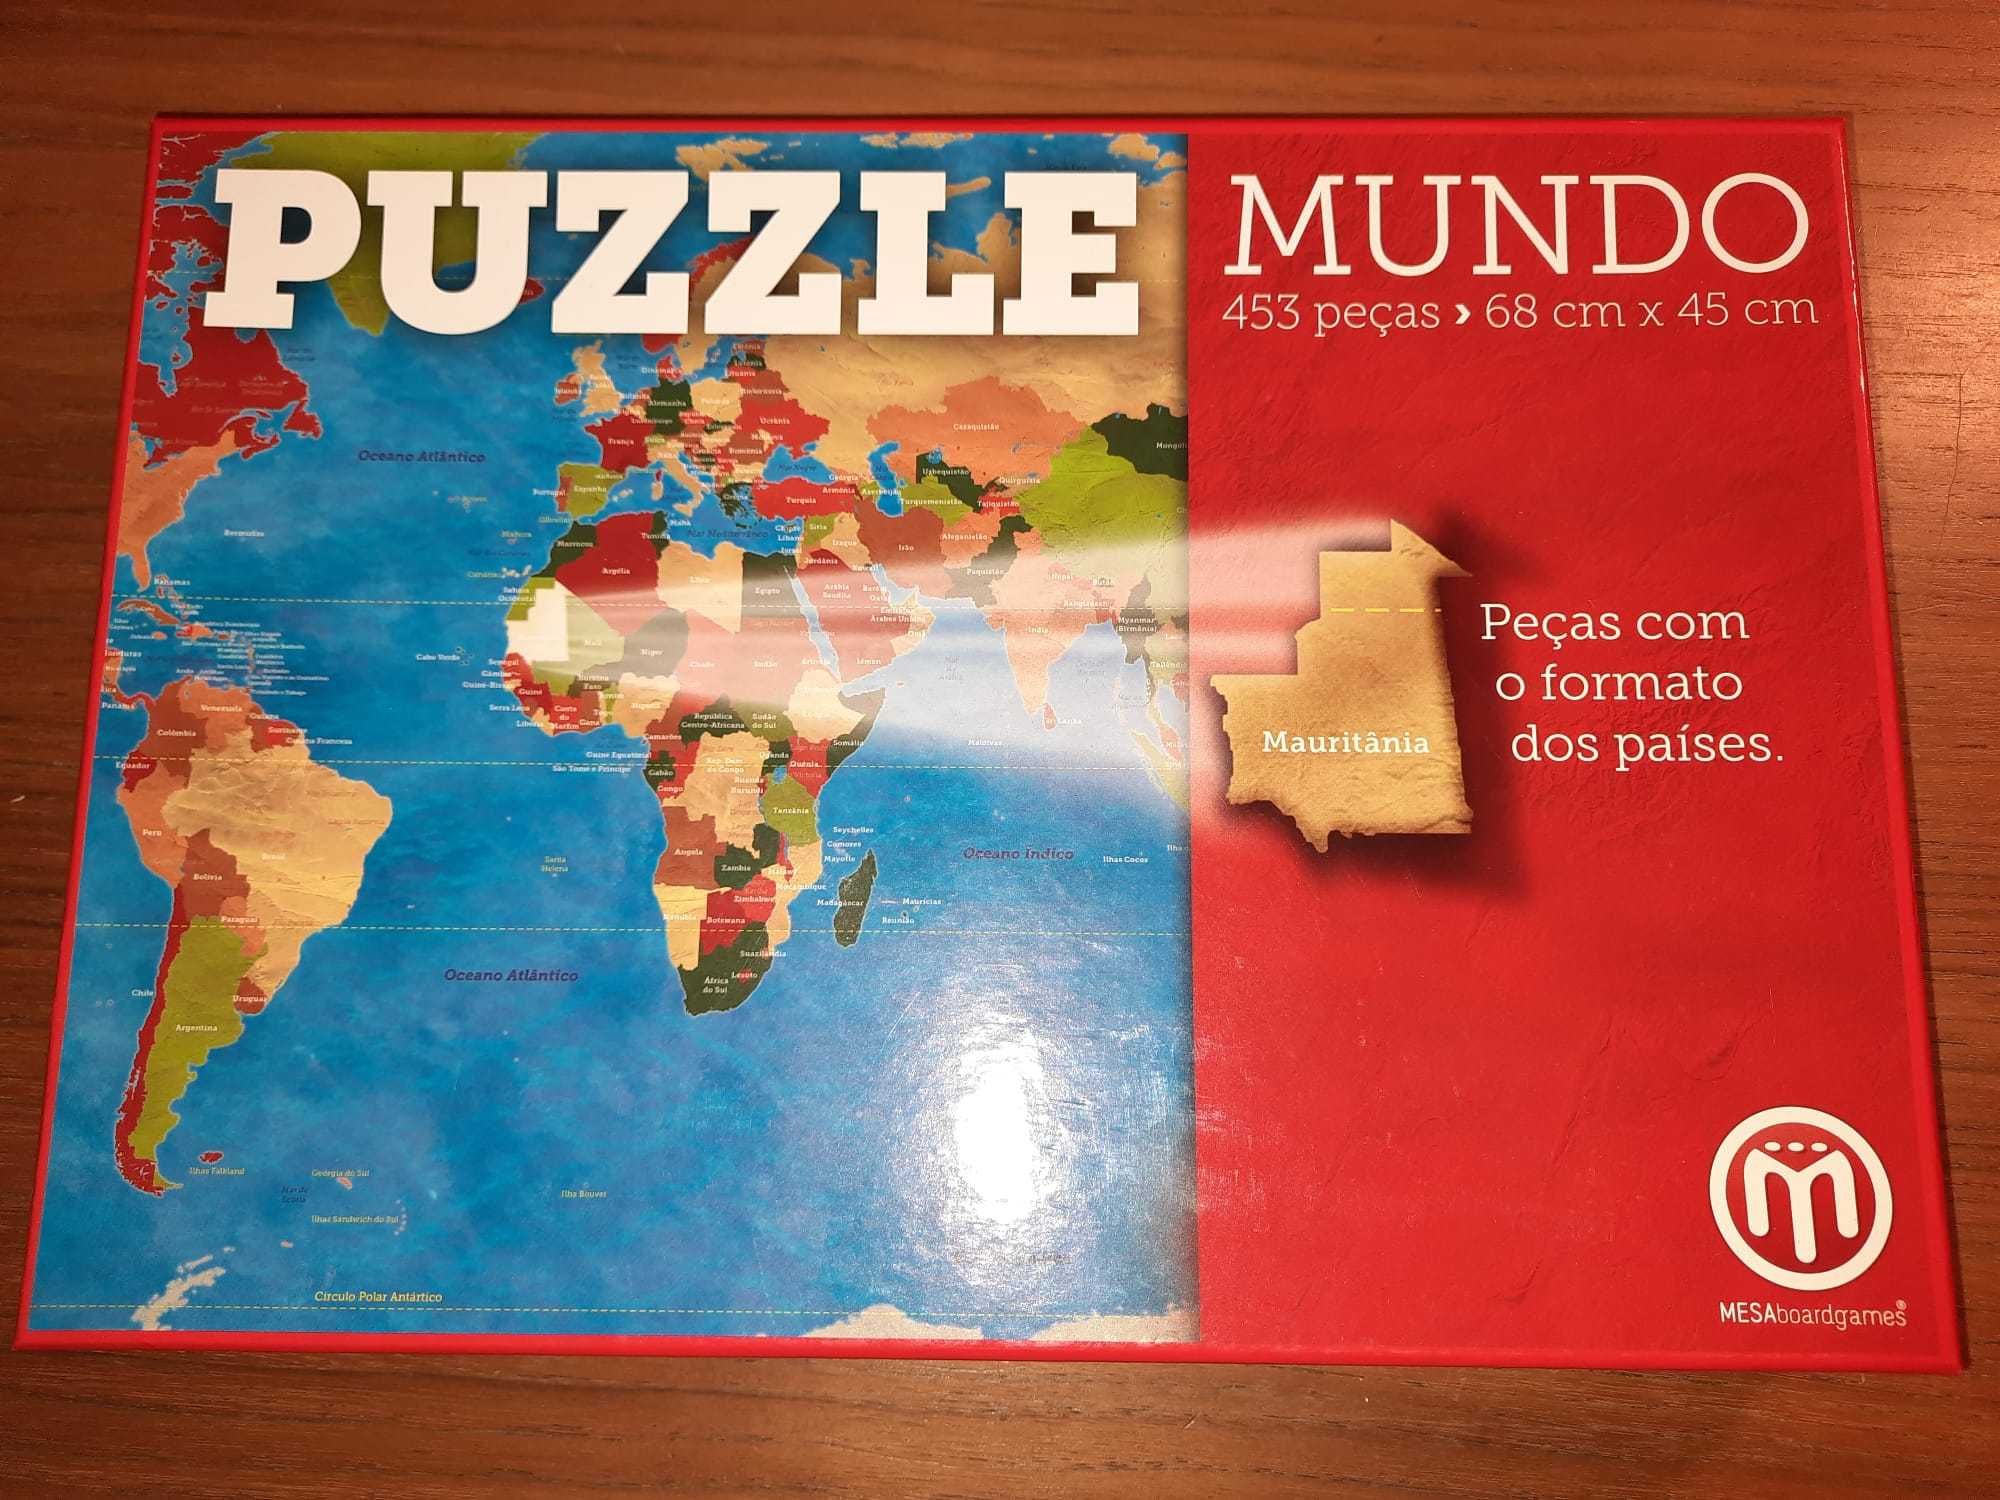 Puzzle Mundo, 453 peças com o formato dos países. Preço: 7 eur.